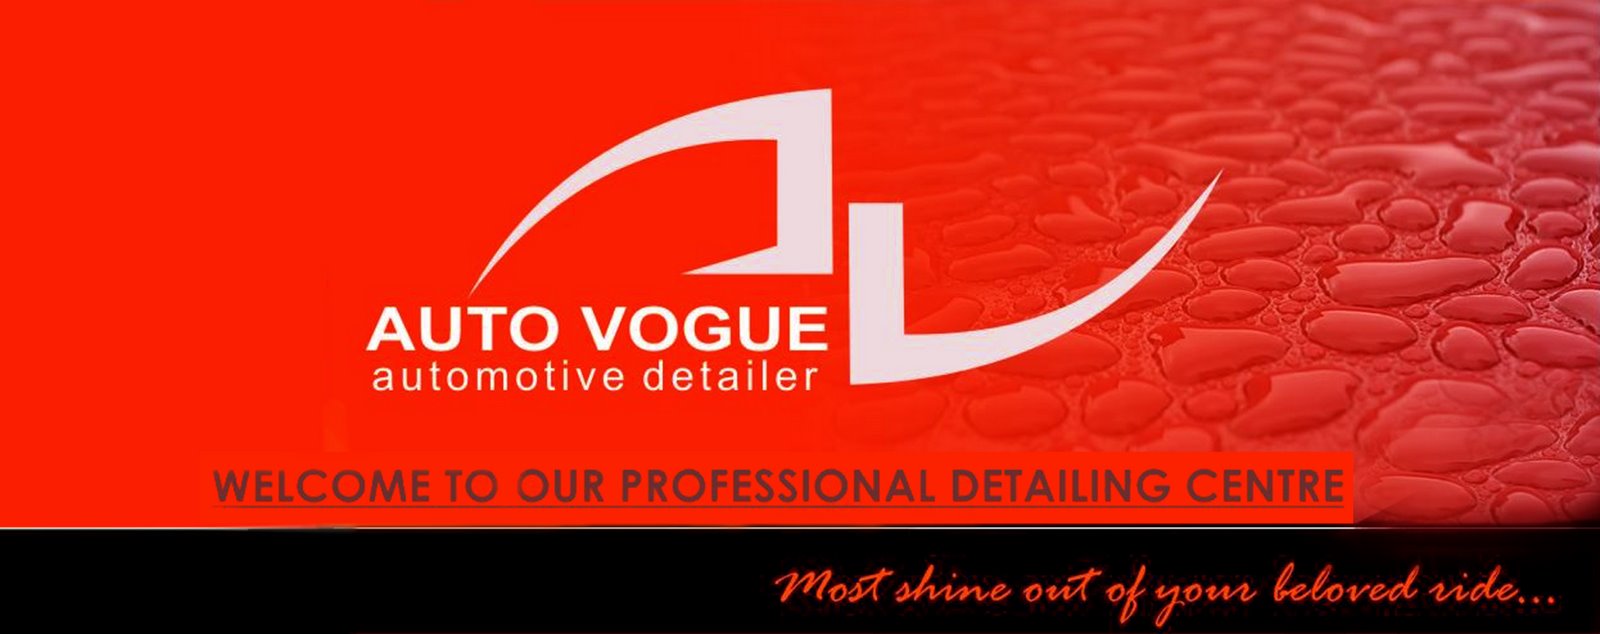 Auto Vogue Automotive Detailer